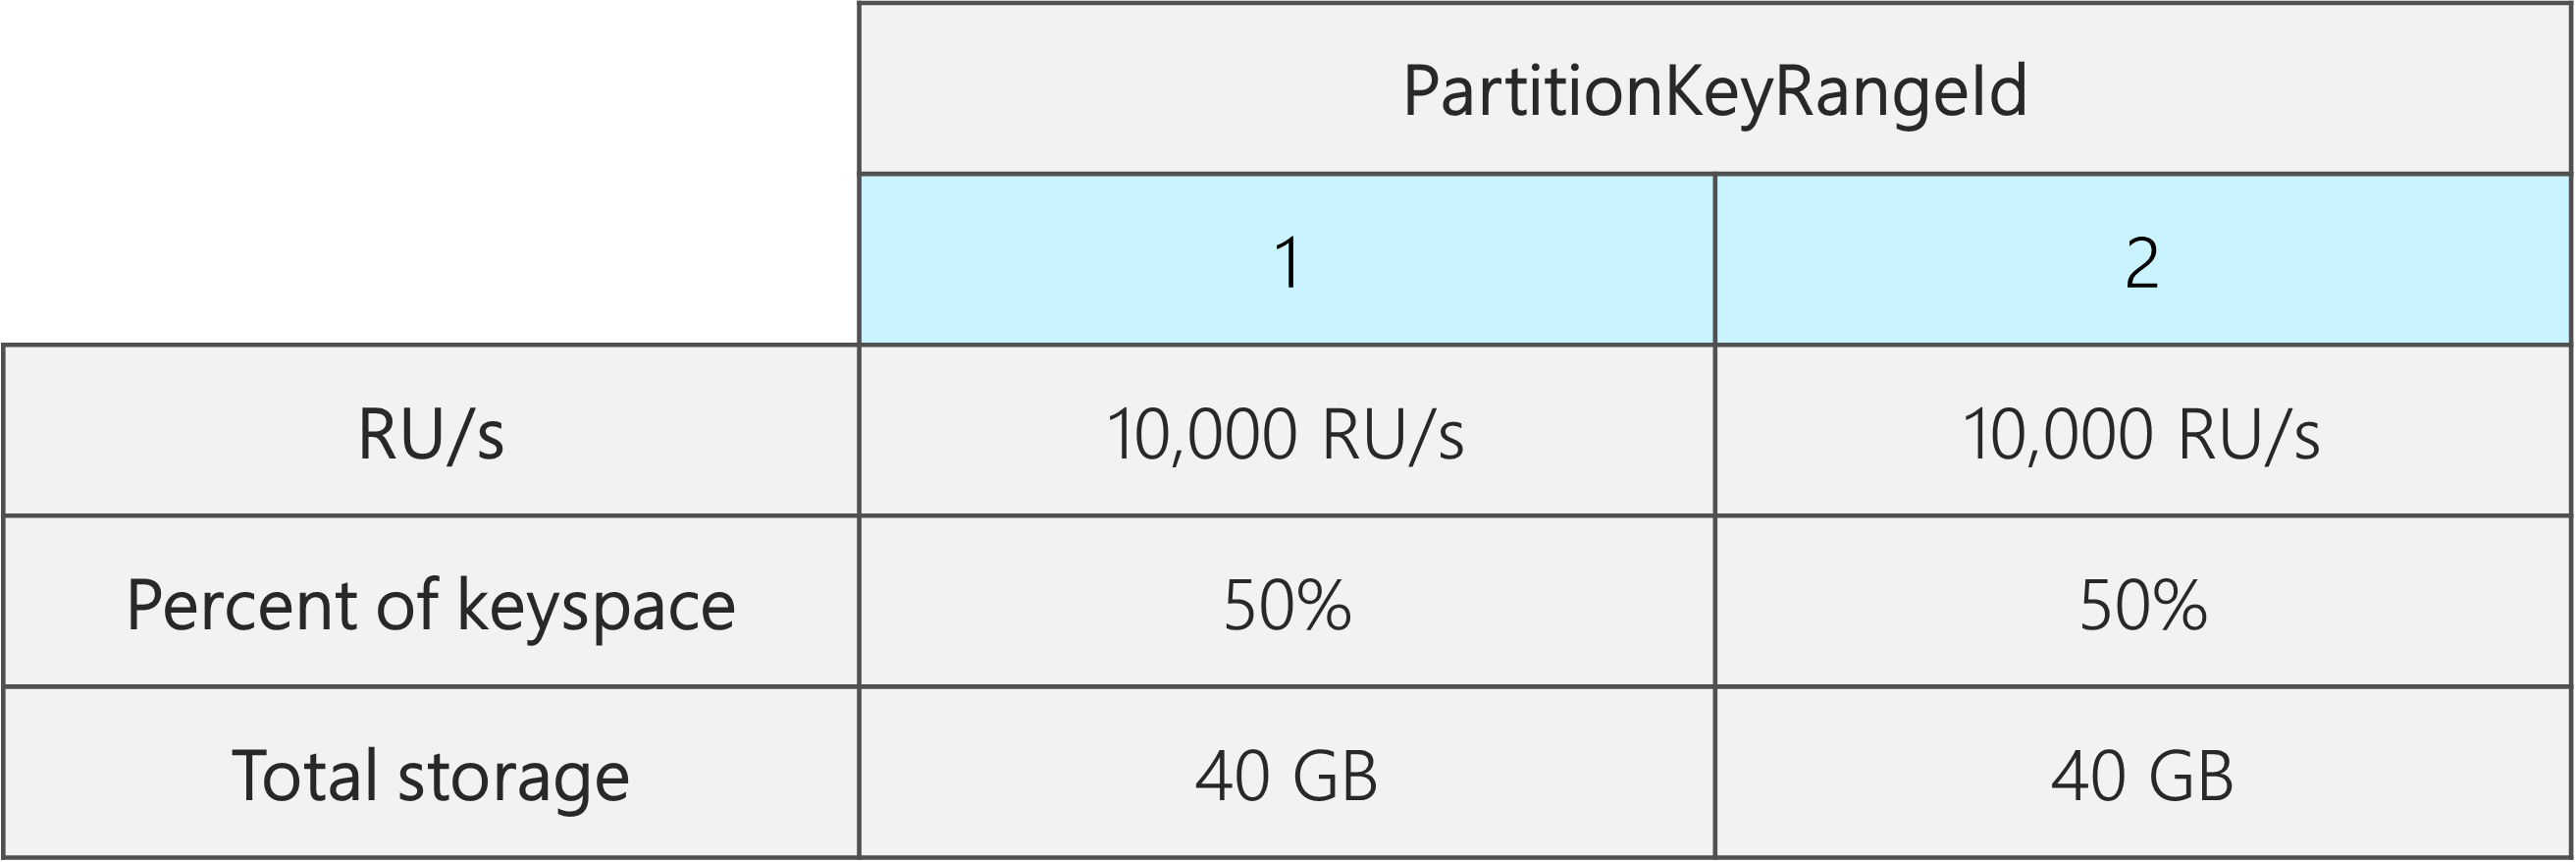 각각 10,000RU/s, 40GB, 전체 키스페이스의 50%가 있는 2개의 PartitionKeyRangeIds